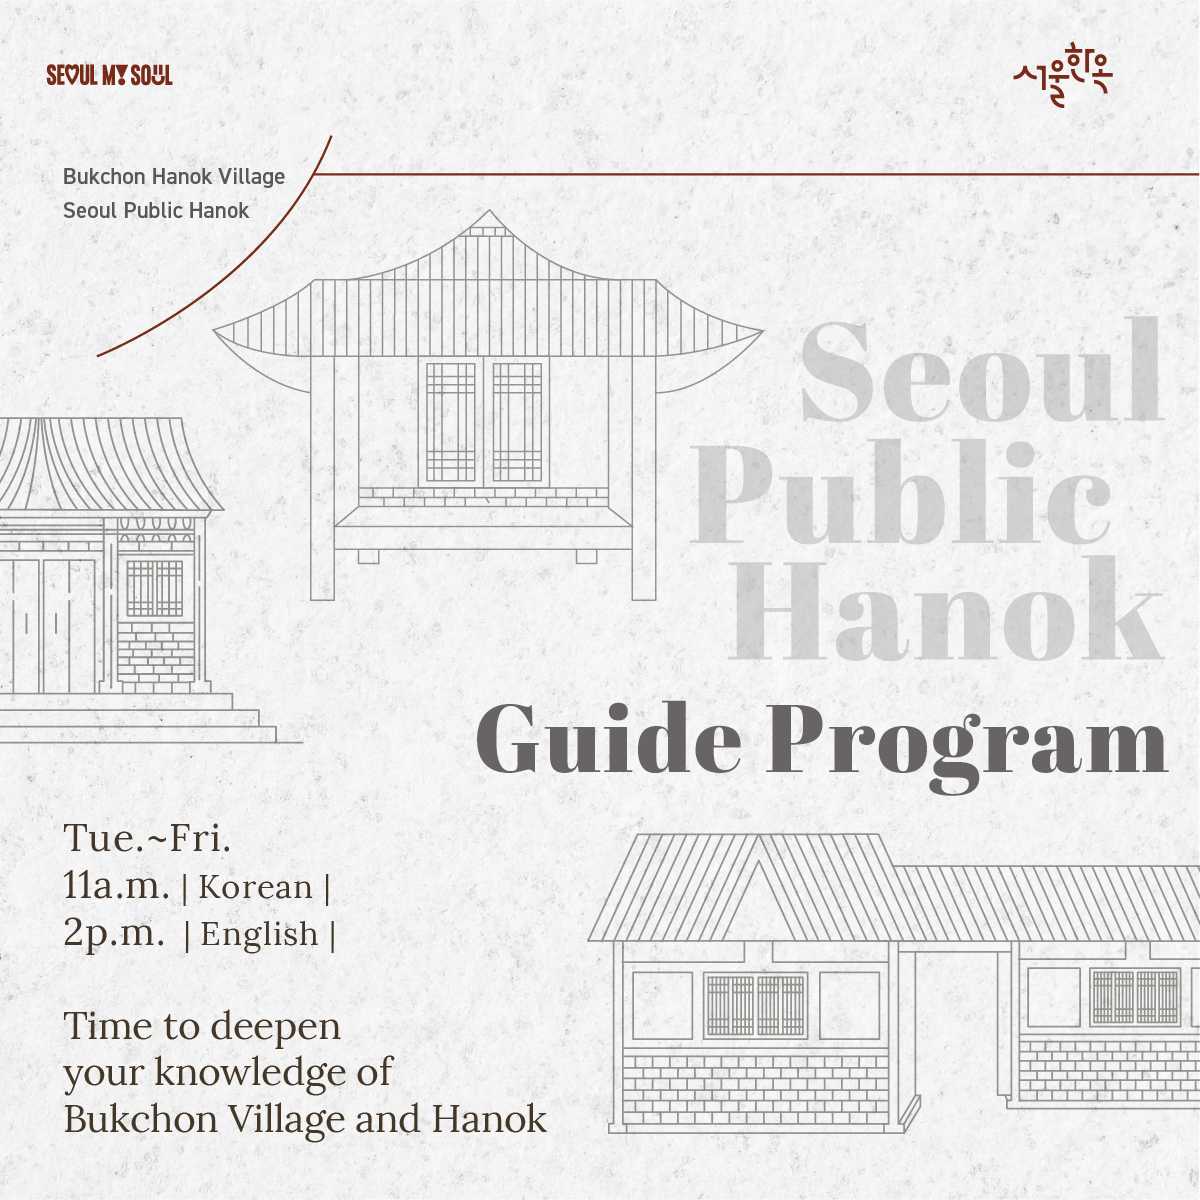 [해설] Bukchon hanok village 4 Seoul Public hanok Guide Program IN ENGLI